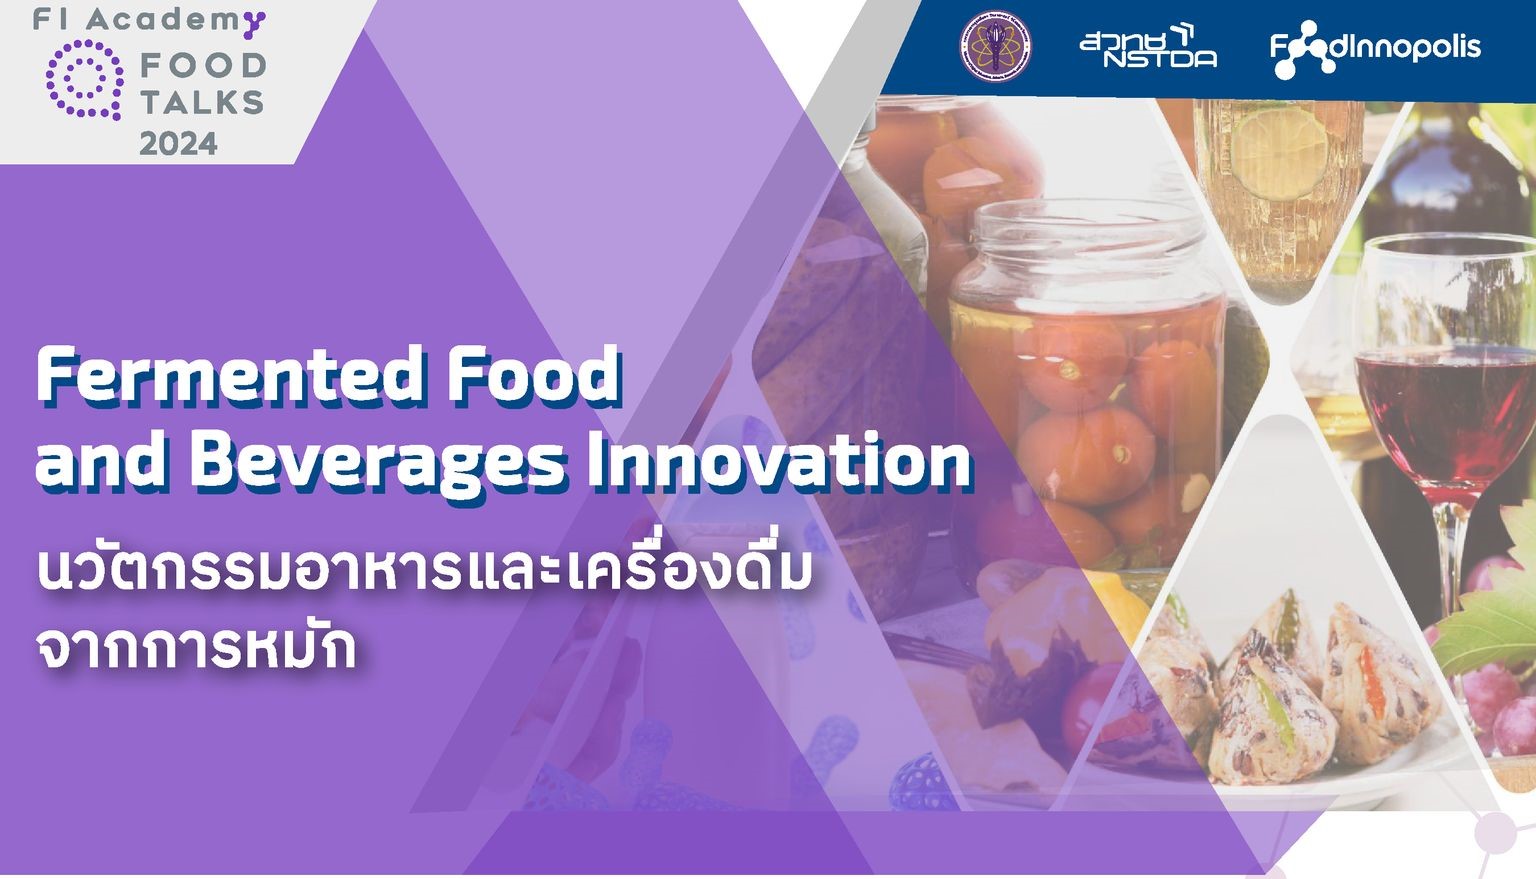 สวทช. โดยเมืองนวัตกรรมอาหาร (Food Innopolis) ขอเรียนเชิญผู้ประกอบการ นักวิจัยและผู้ที่สนใจ ฟังบรรยายในกิจกรรม “Food Talks 2024 #3 Fermented Food and Beverages Innovation: นวัตกรรมอาหารและเครื่องดื่มจากการหมัก”